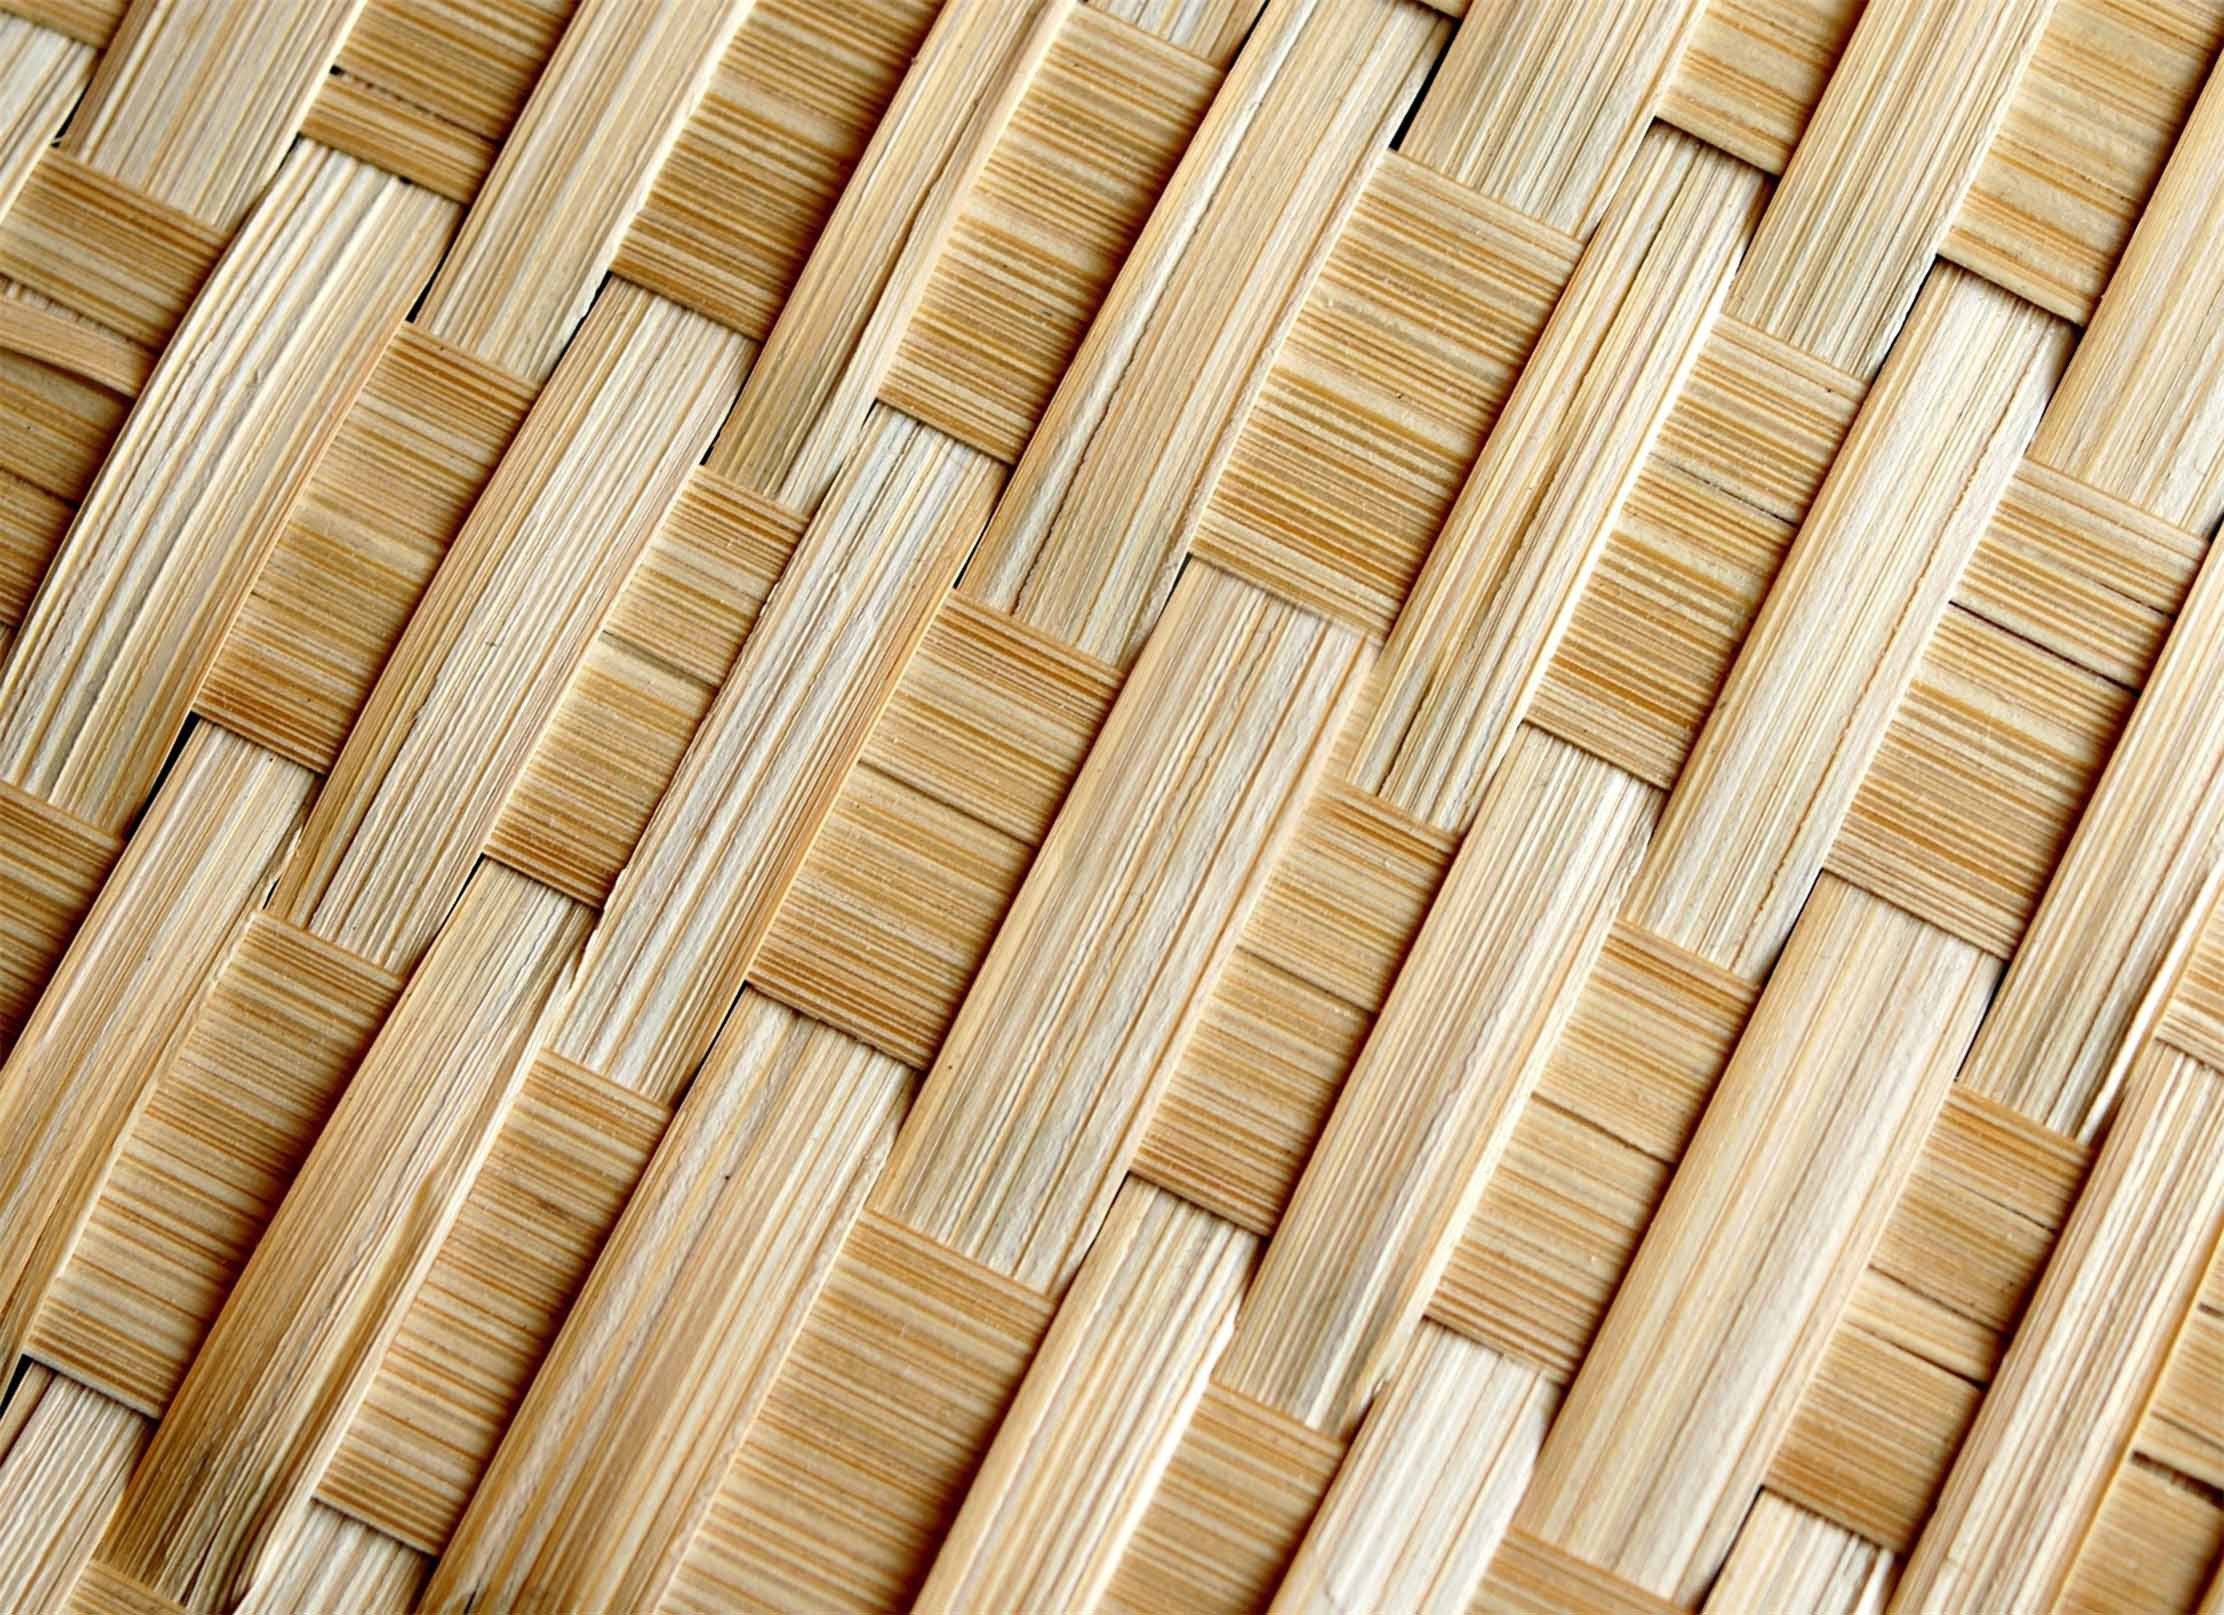 3D Bamboo Weave 651 Kitchen Mat Floor Mural Wallpaper AJ Wallpaper 